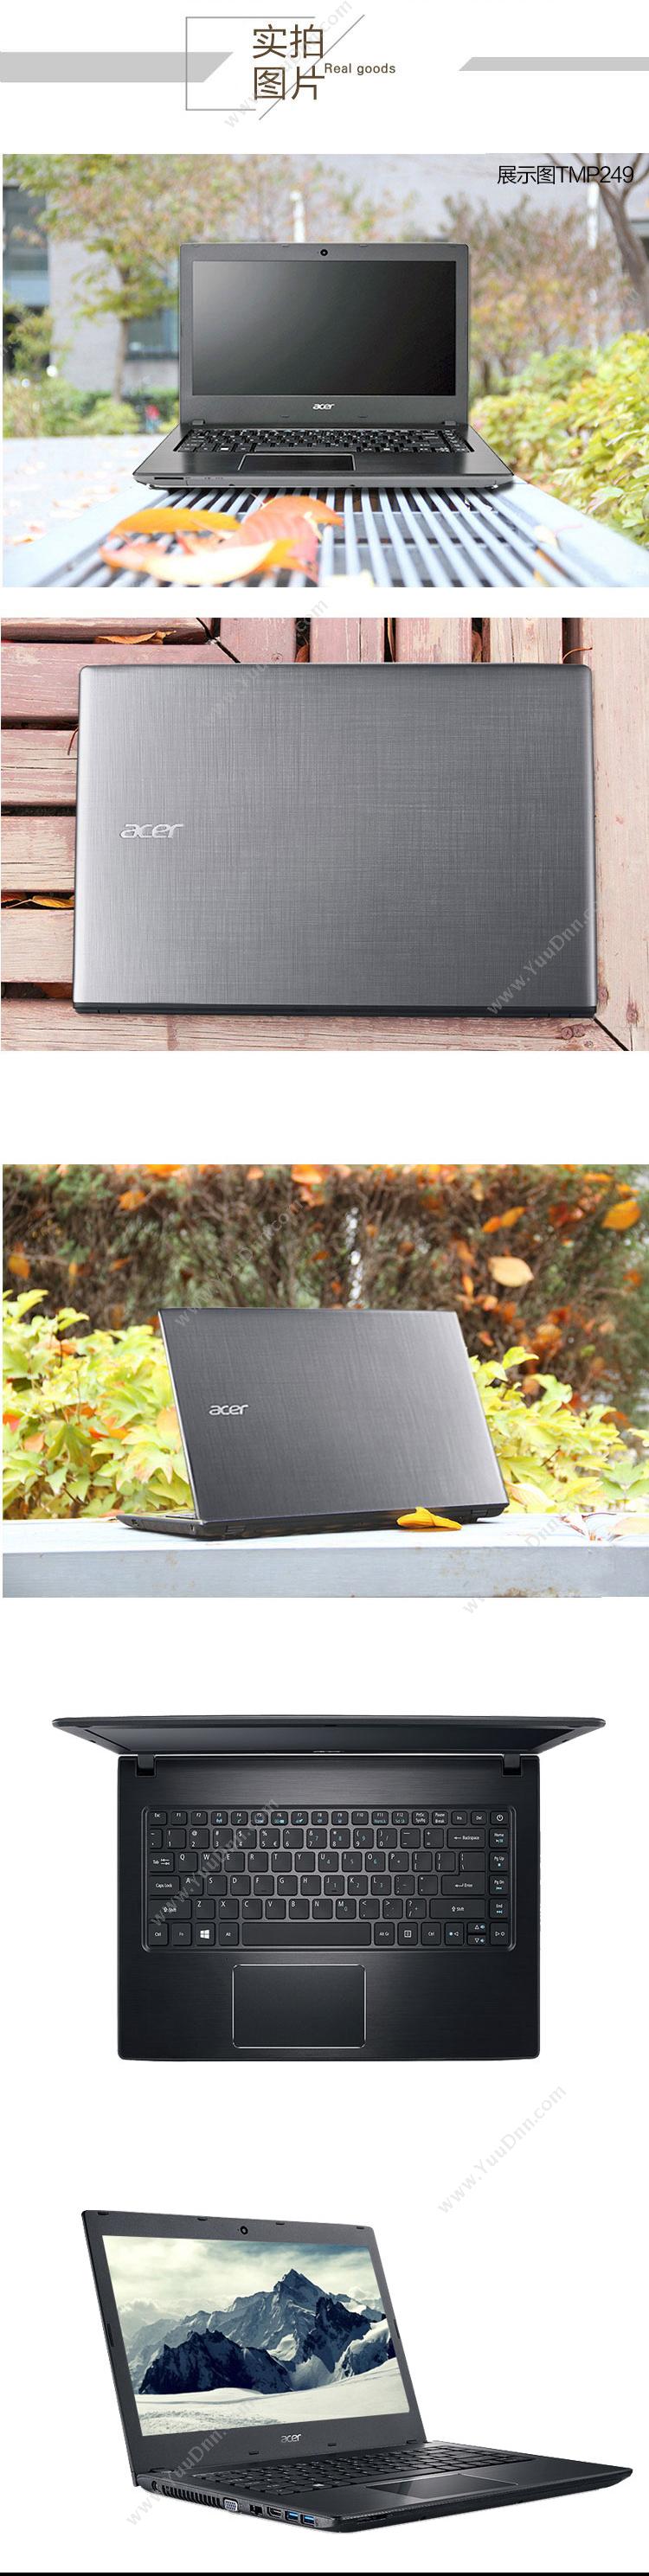 宏碁 Acer TravelMate P249-7111 便携式计算机 I5-6200U   /集成/4G/500G/集显/无光驱/LED/14英寸/WIN7P/一年保修 平板电脑